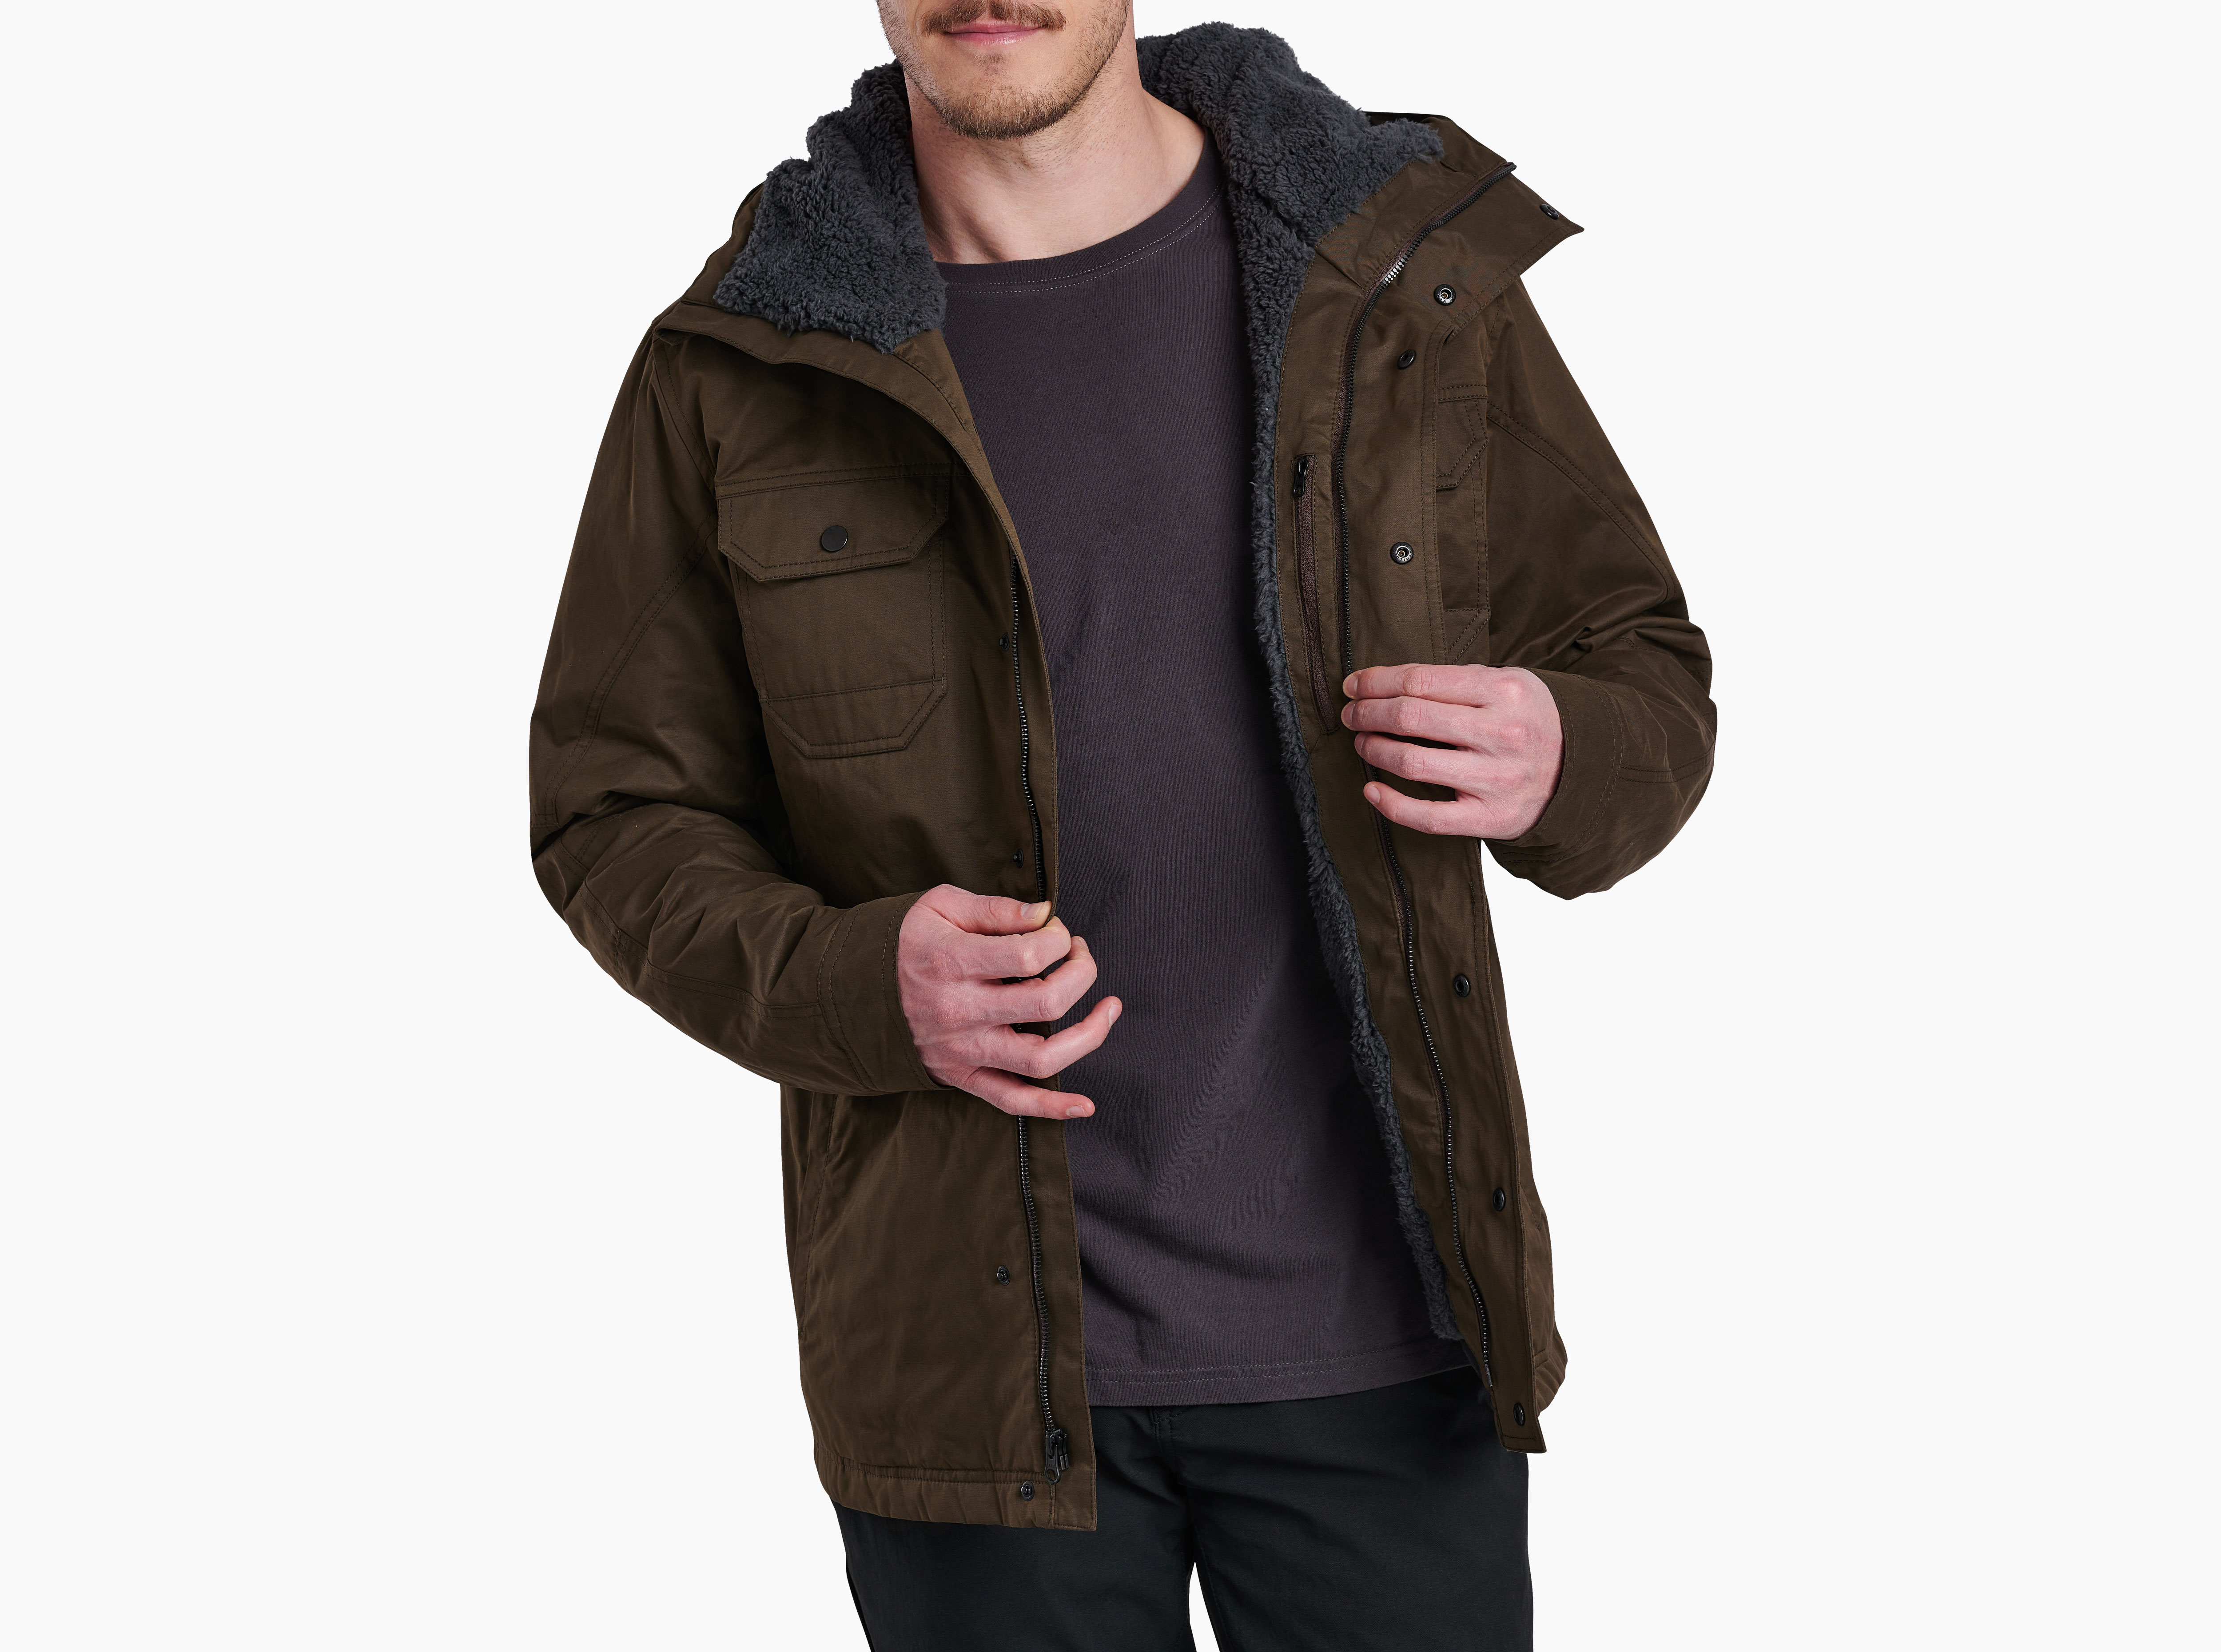 Kollusion™ Fleece Lined Jacket in Men's Outerwear